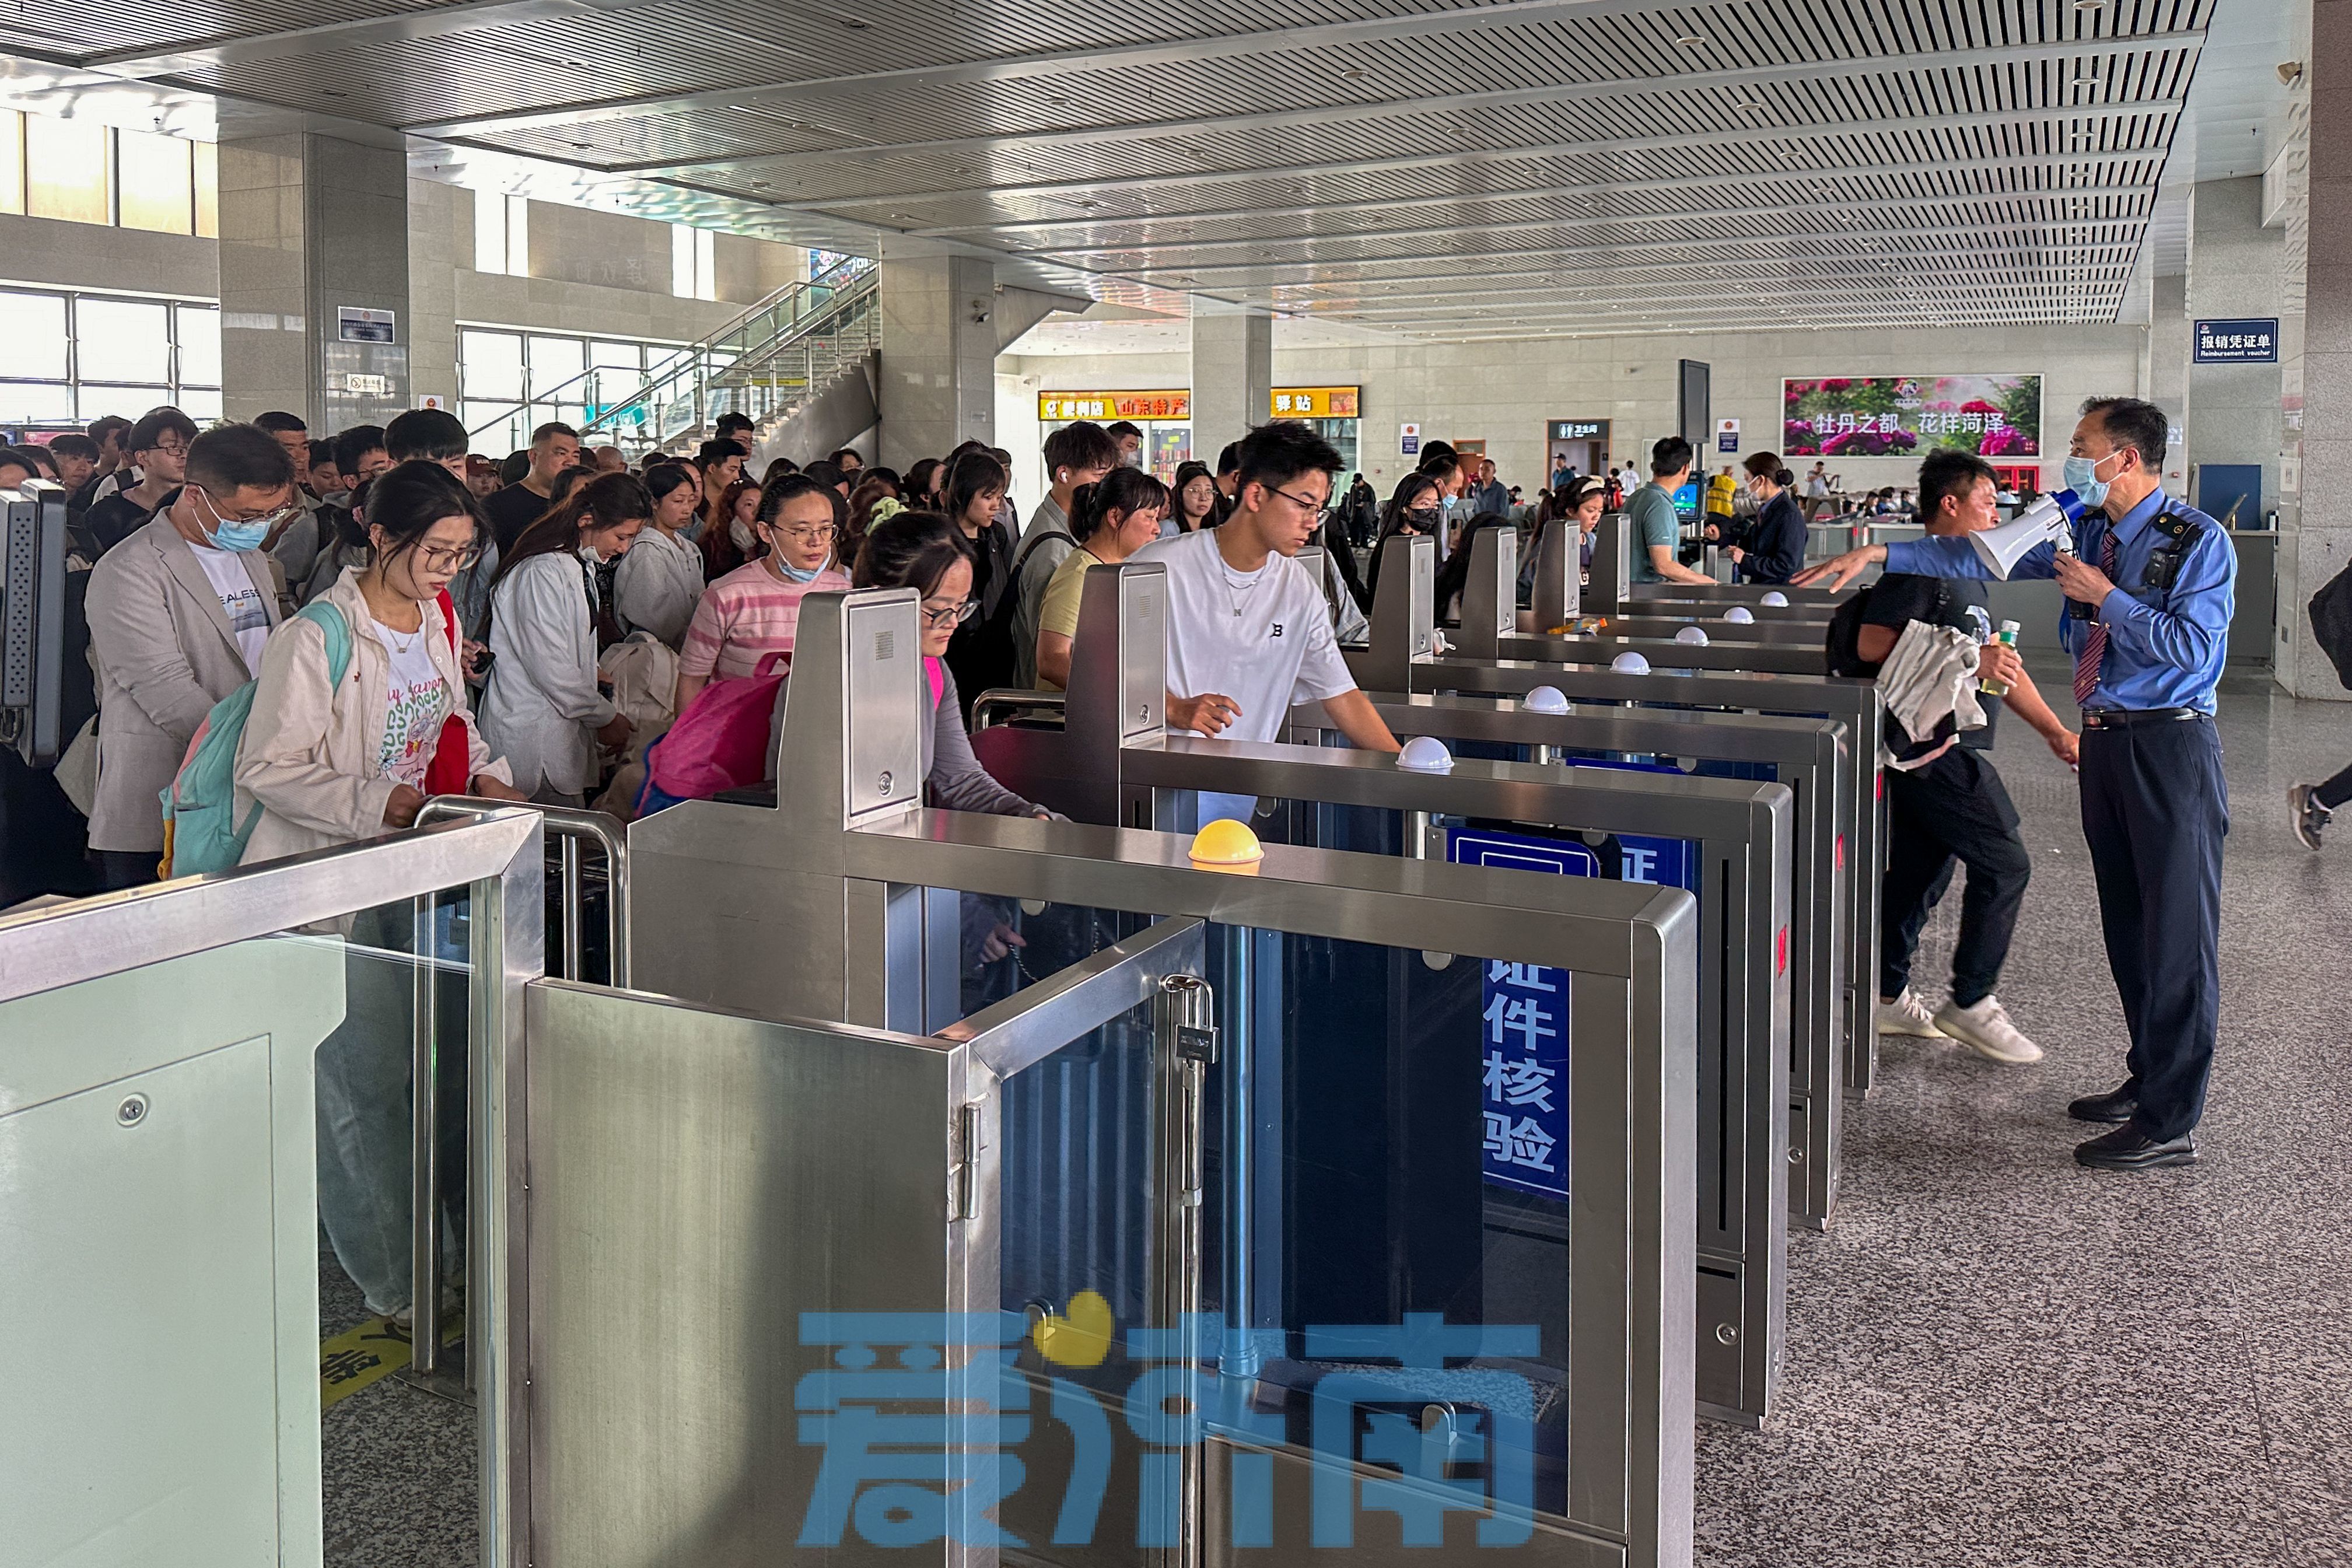 国铁济南局五一假期运输启动 预计发送旅客710万人次